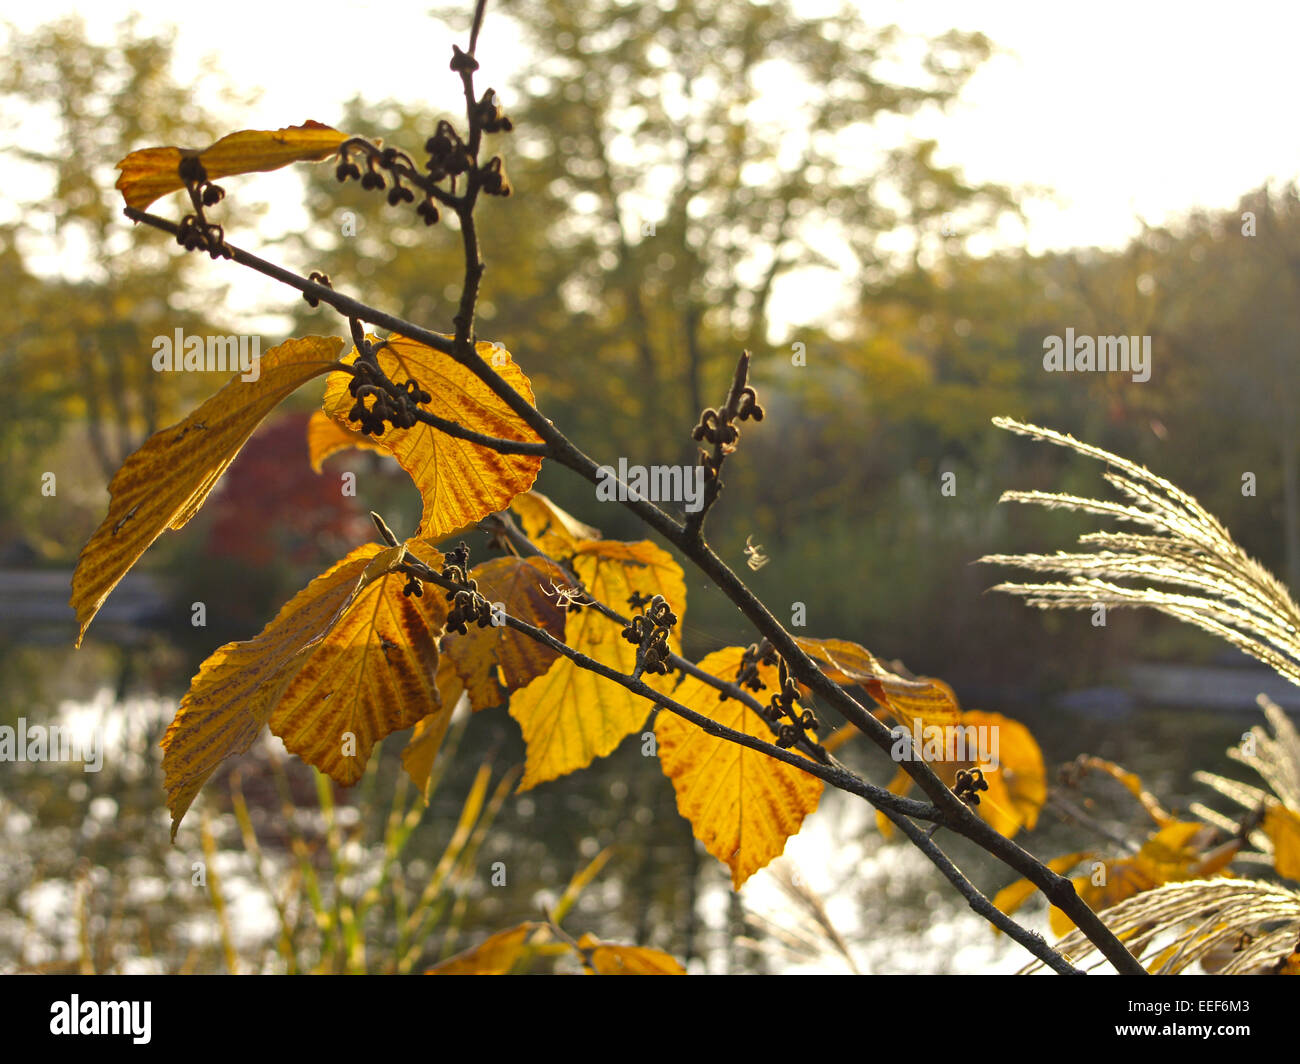 Herbst, Herbstlaub, Blaetter, Farbe, Gelb, Gruen, Jahreszeiten, Natur, Landschaft, Stimmung, Ruhe, Stille, einzeln, Menschenleer Stock Photo